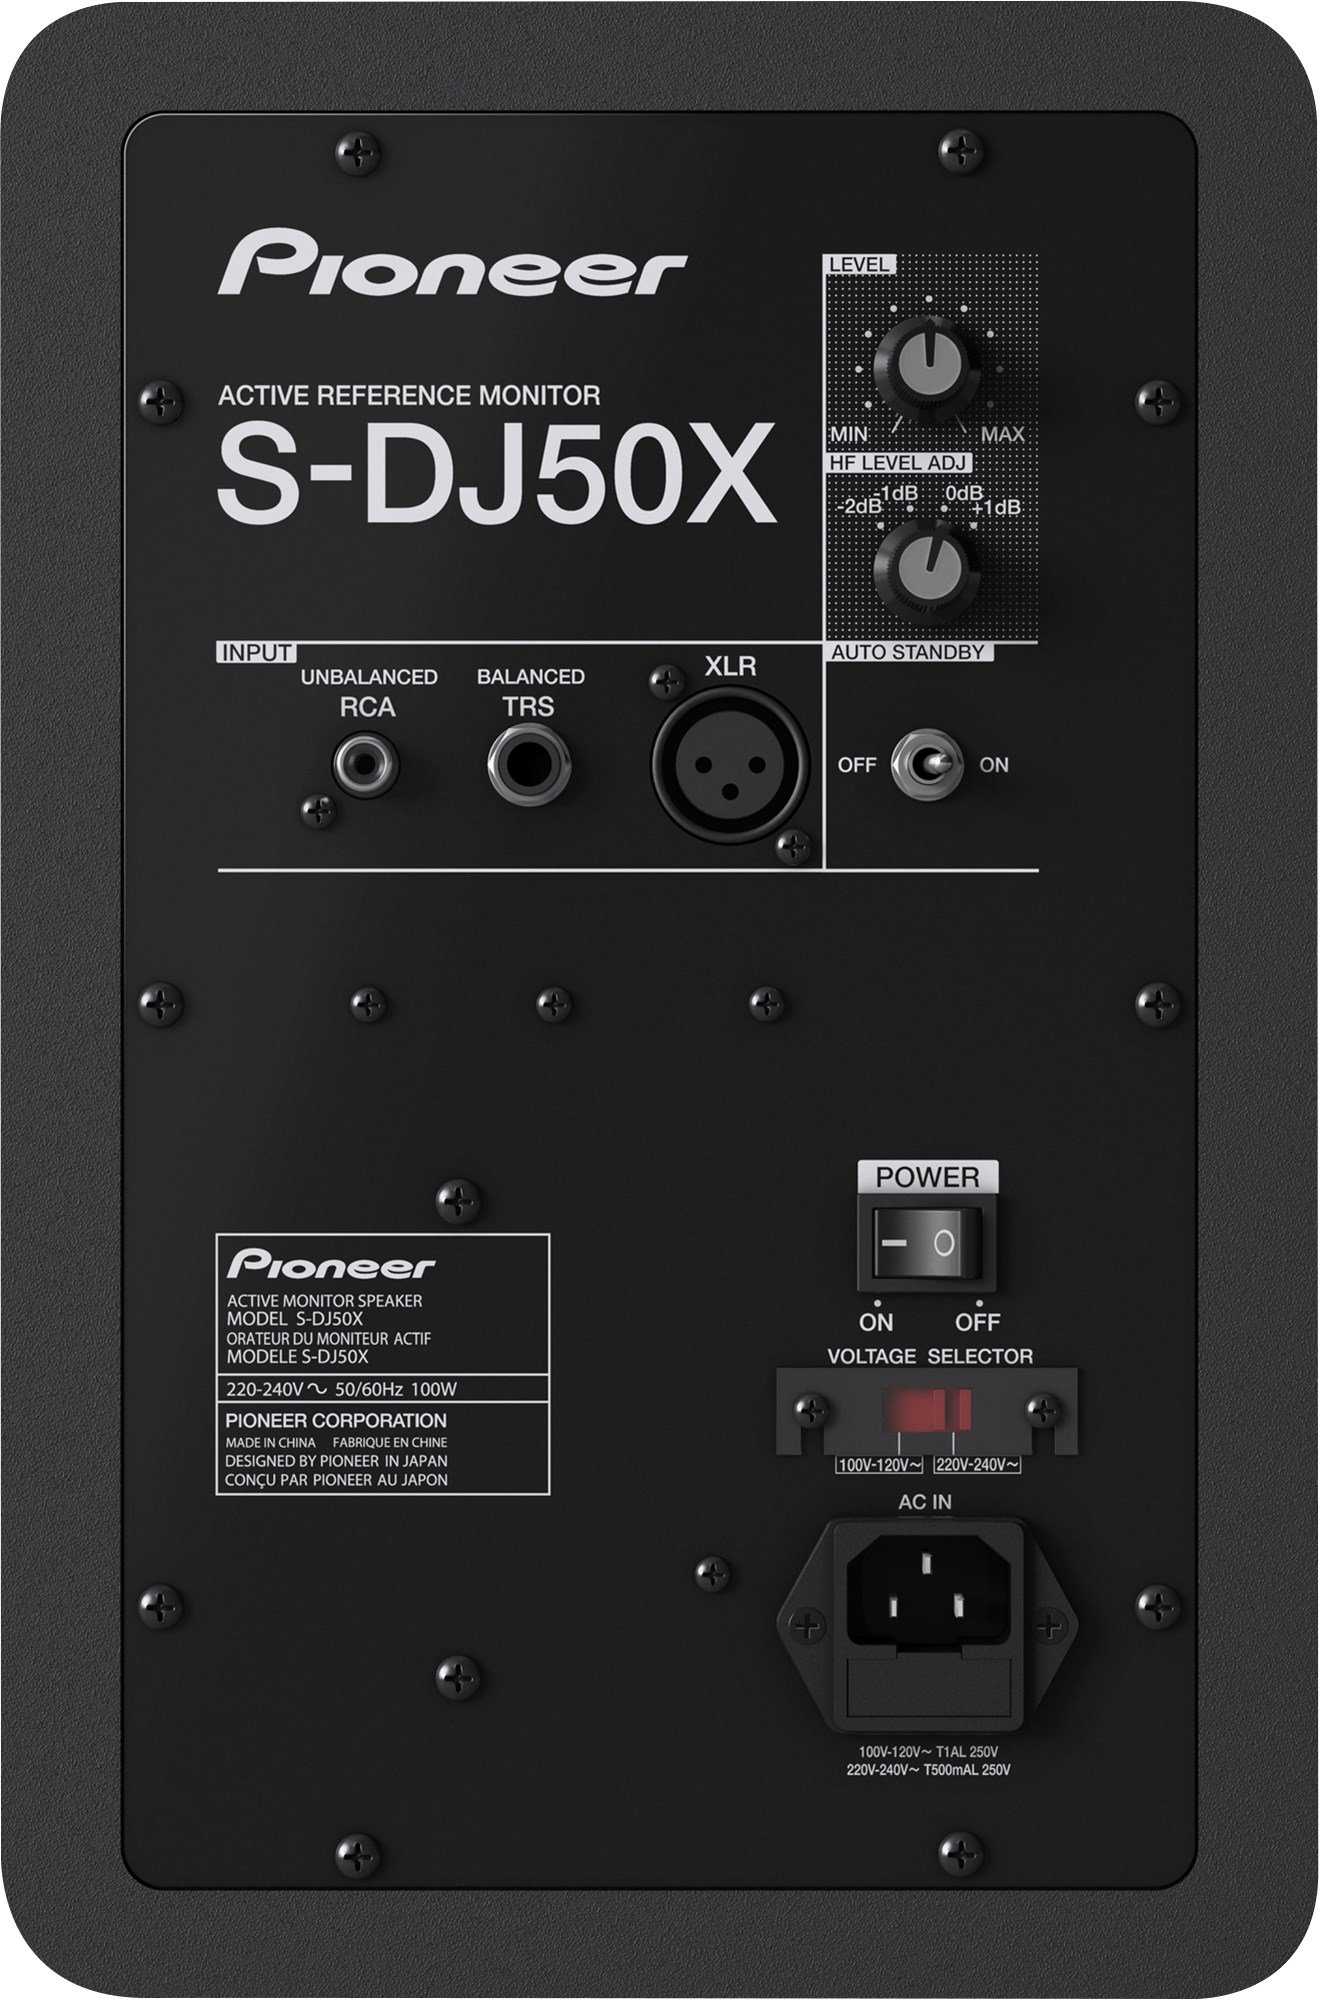 s-dj50x-back